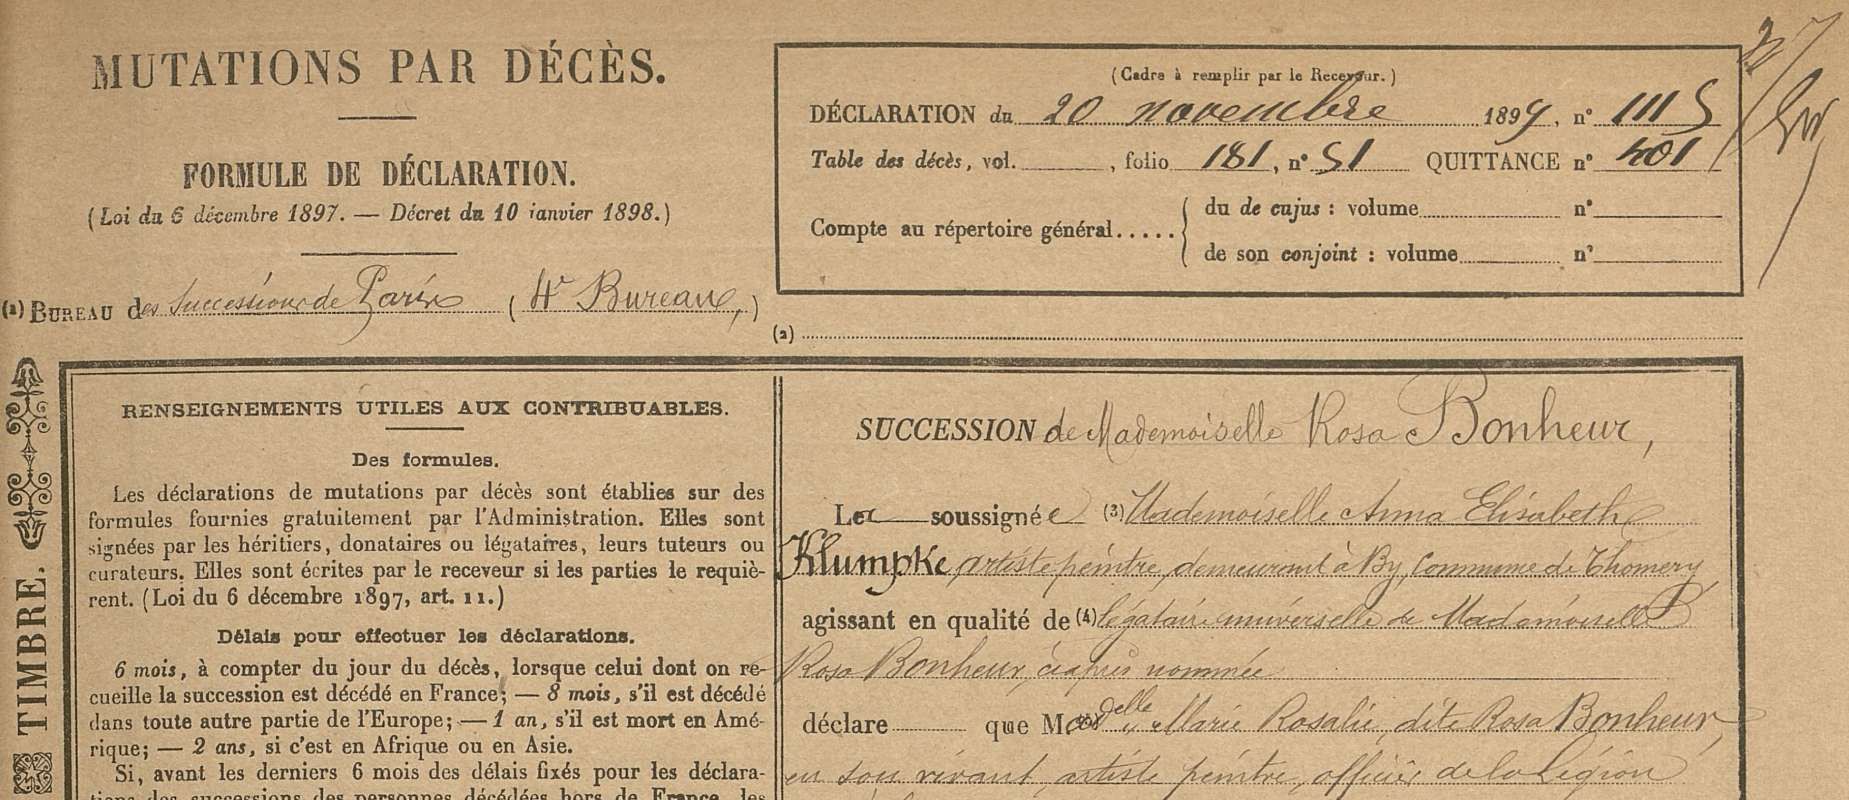 Mutation par décès de Rosa Bonheur, 4e bureau, n°1115, 20 novembre 1899. Archives de Paris, DQ7 11534.